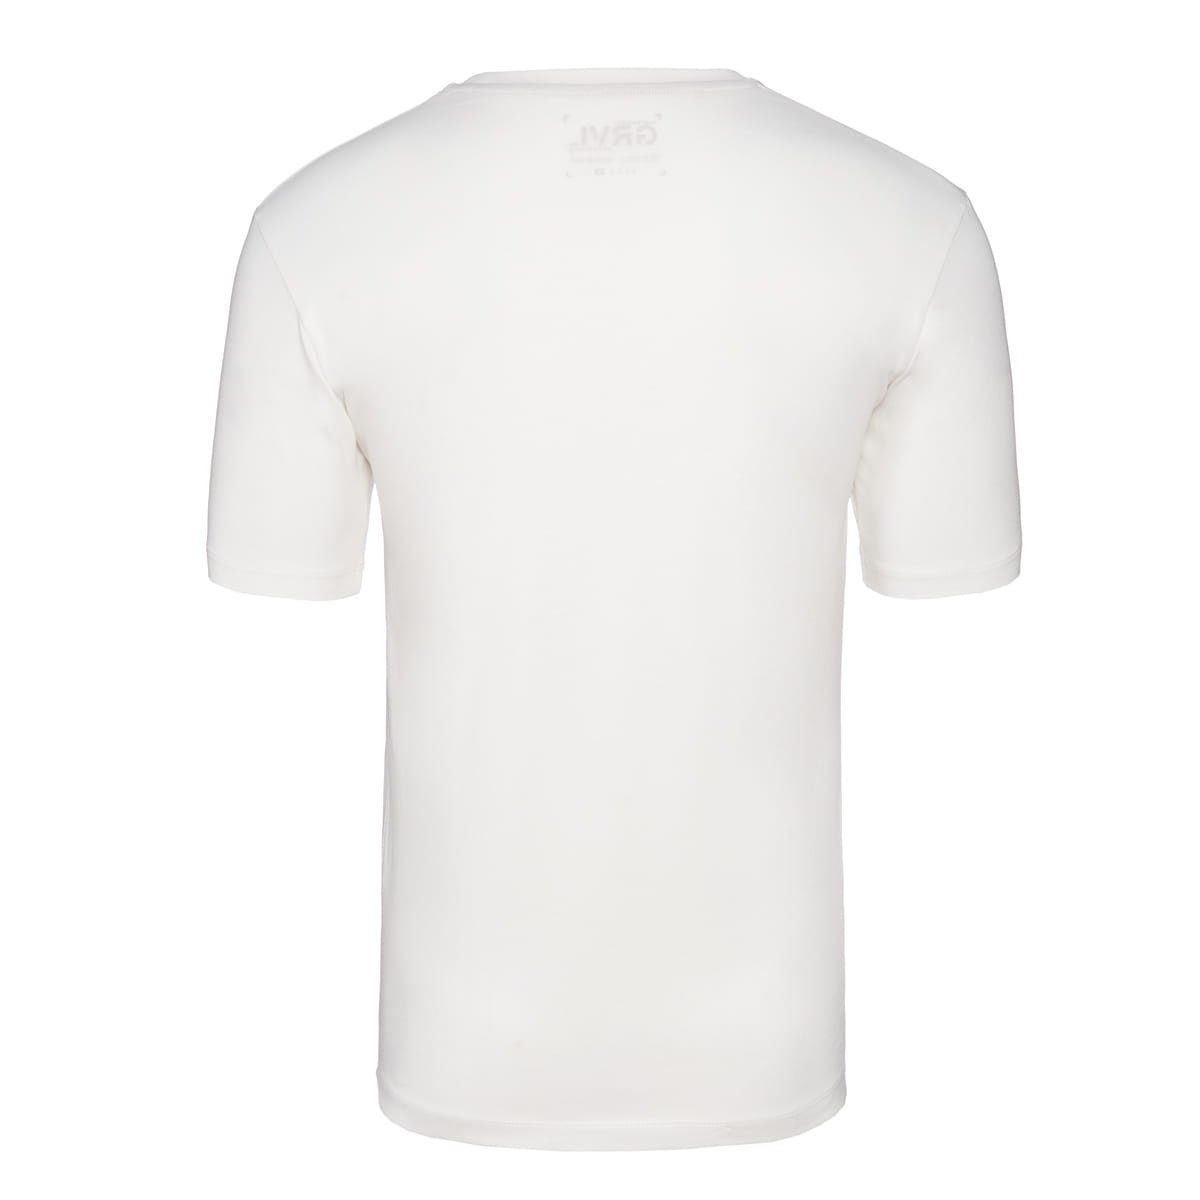 Platzangst Platzangst Gravel White T-Shirt T-Shirts XS (1-tlg) Logo